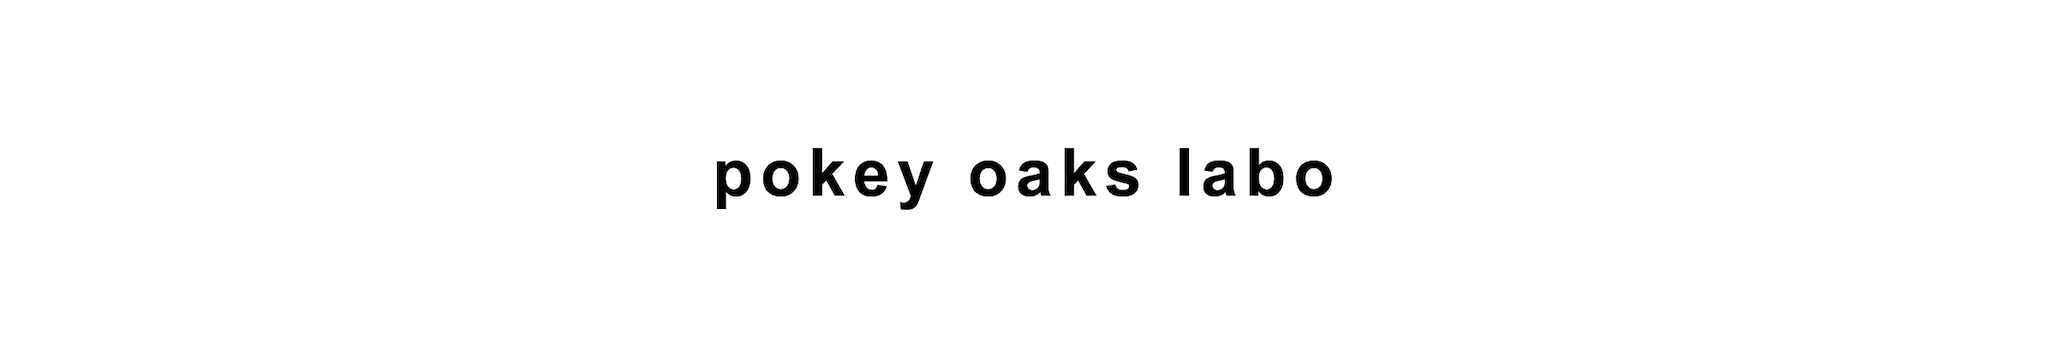 pokey oaks labo